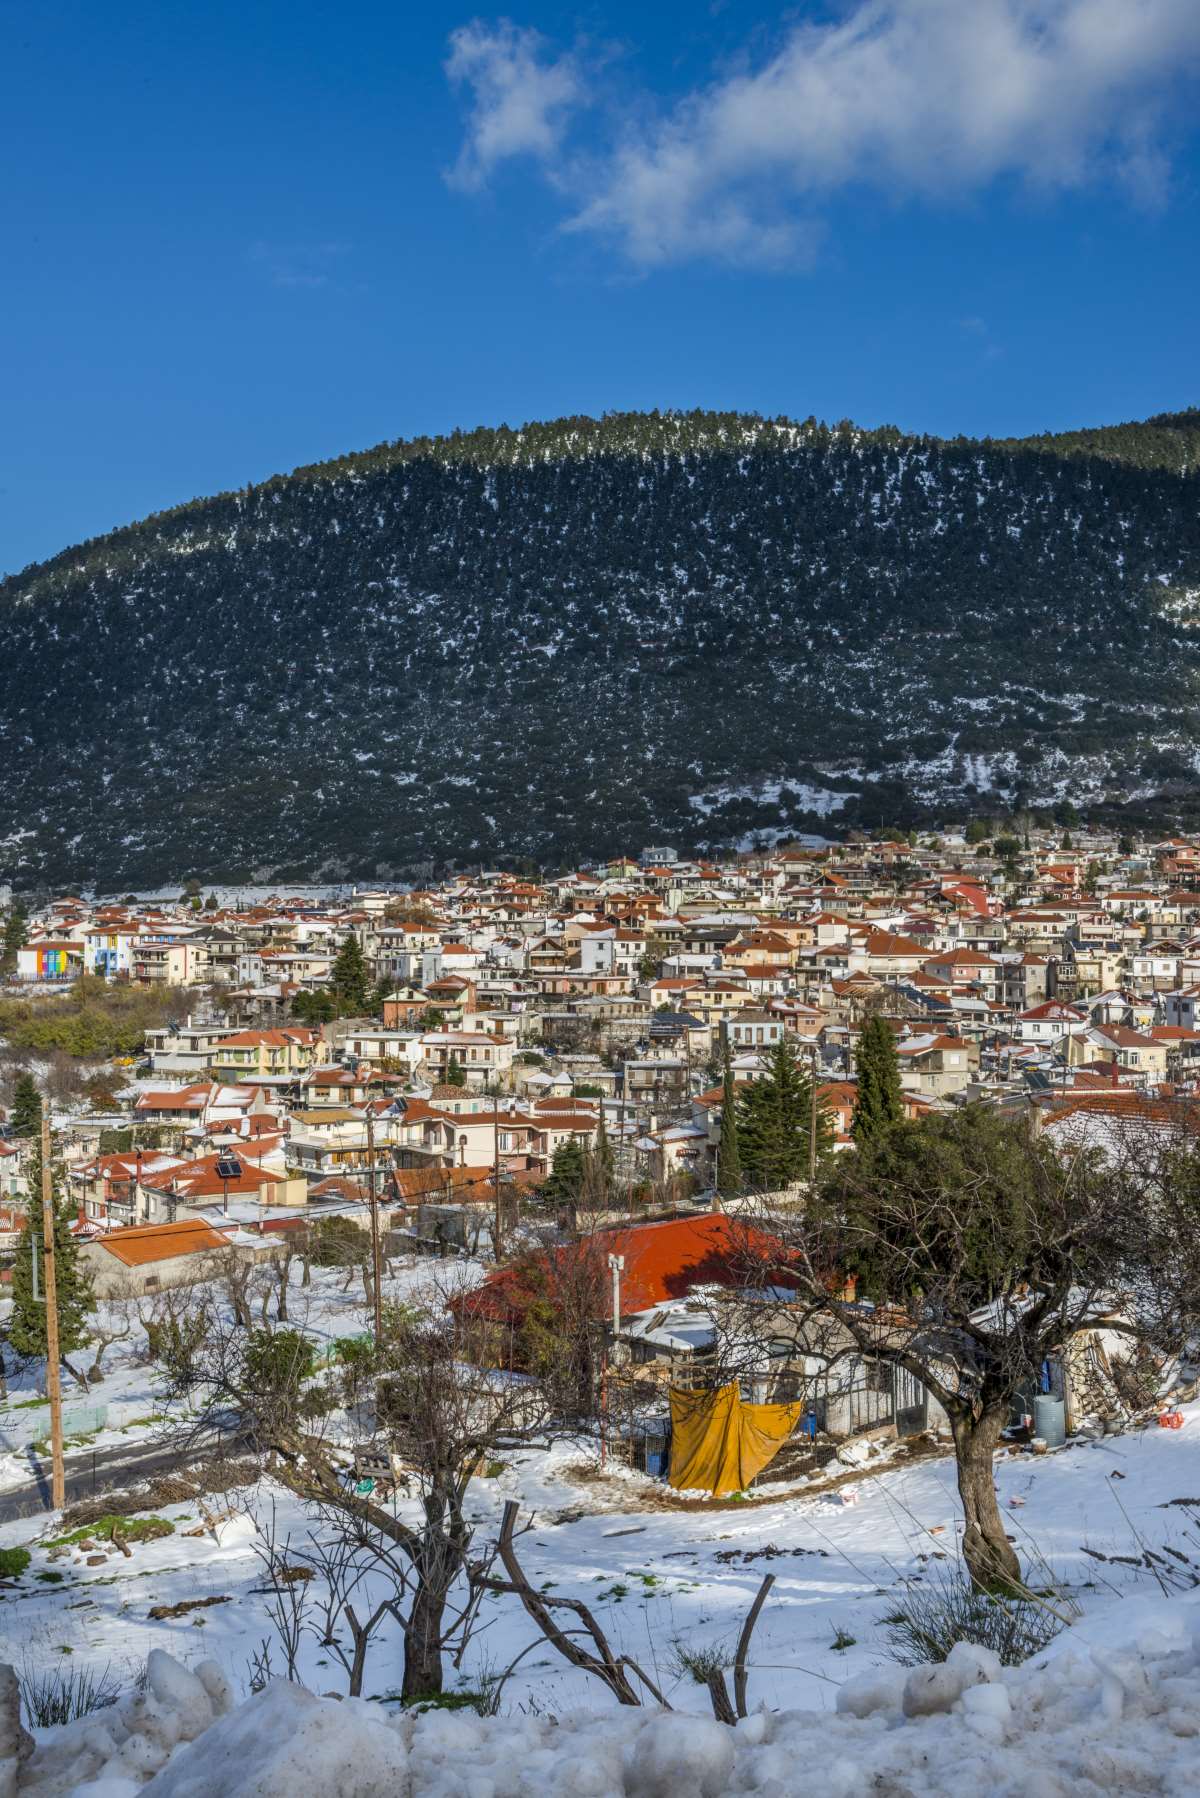 Κυριάκι Βοιωτίας, πανοραμική εικόνα του χωριού με χιόνια